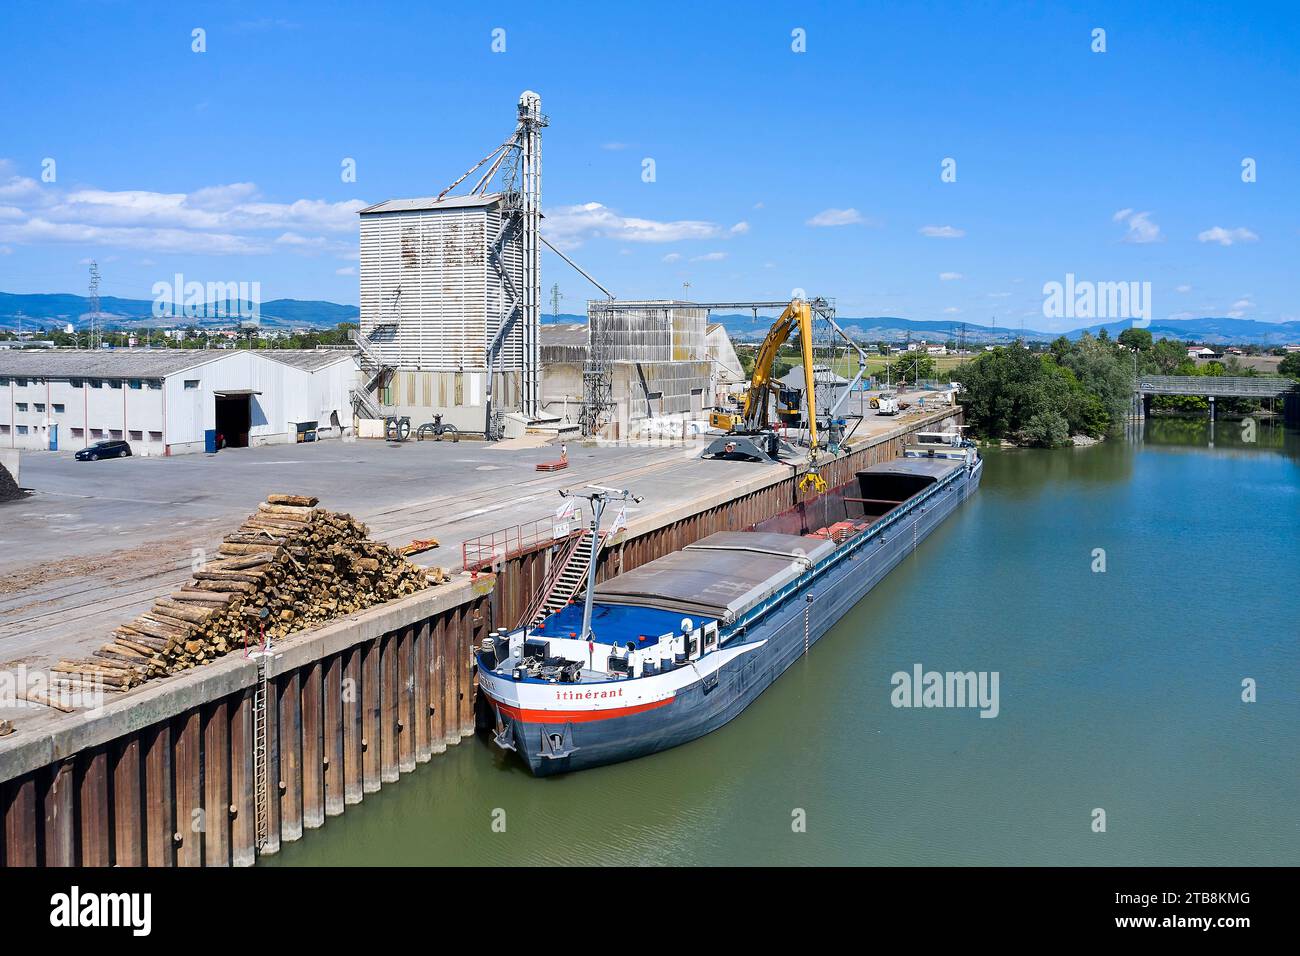 Villefranche-sur-Saone (centro-este de Francia): Manejo de embarcaciones en el puerto fluvial. Descarga de 910 toneladas de chapa metálica de la barcaza “l'Itinerant” Foto de stock